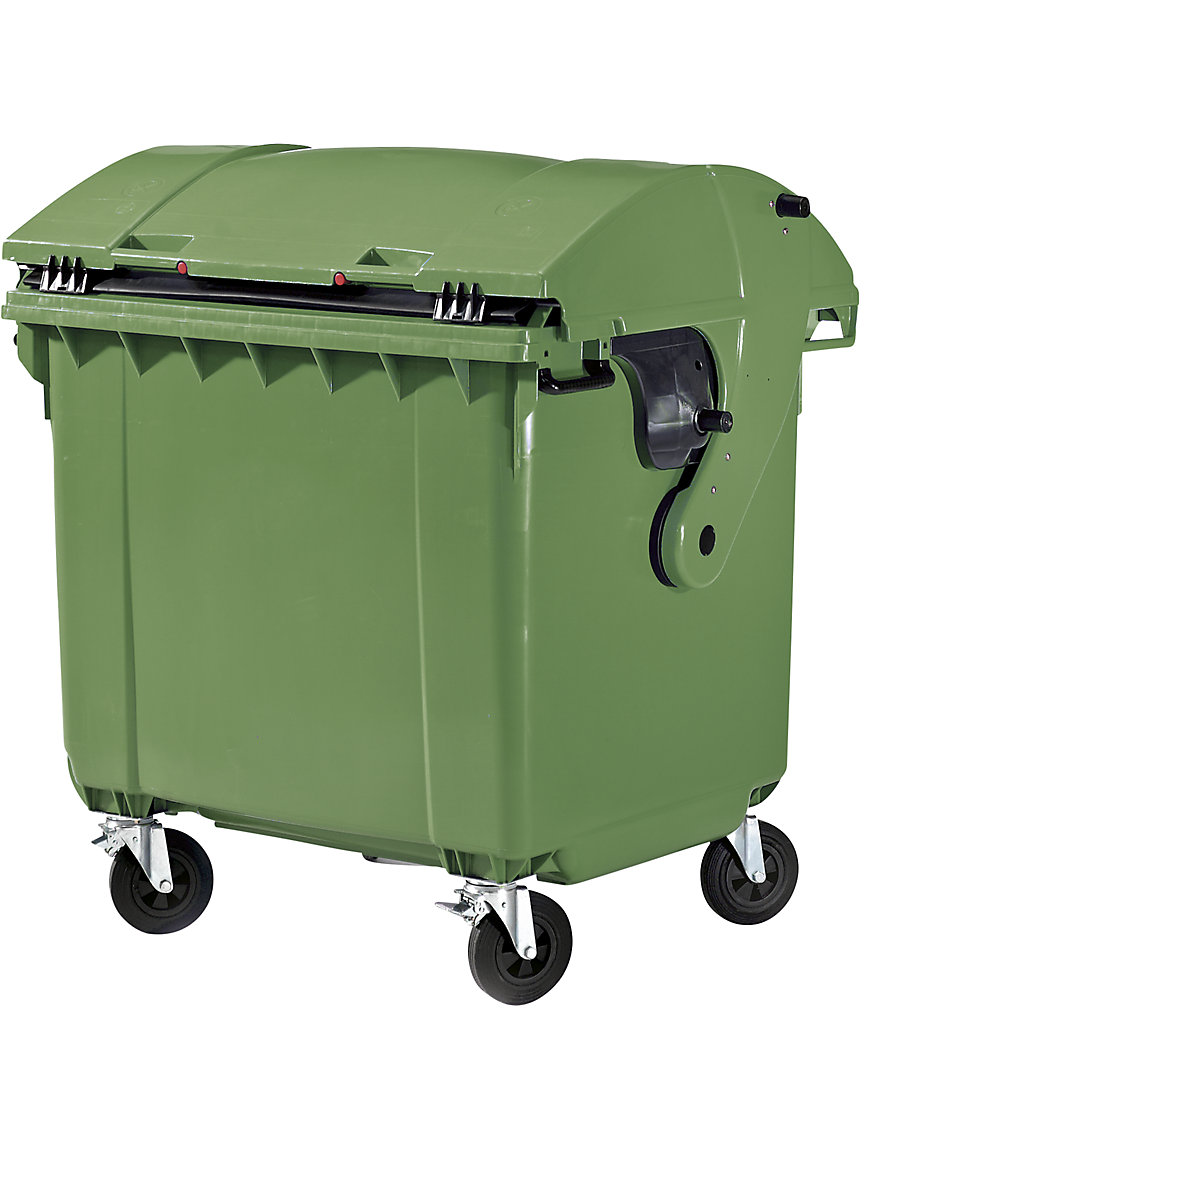 Pojemnik na odpady, z tworzywa, DIN EN 840, poj. 1100 l, wys. x szer. x głęb. 1360 x 1465 x 1100 mm, pokrywa przesuwana, zabezpieczenie przed dostępem dzieci, zielony-6